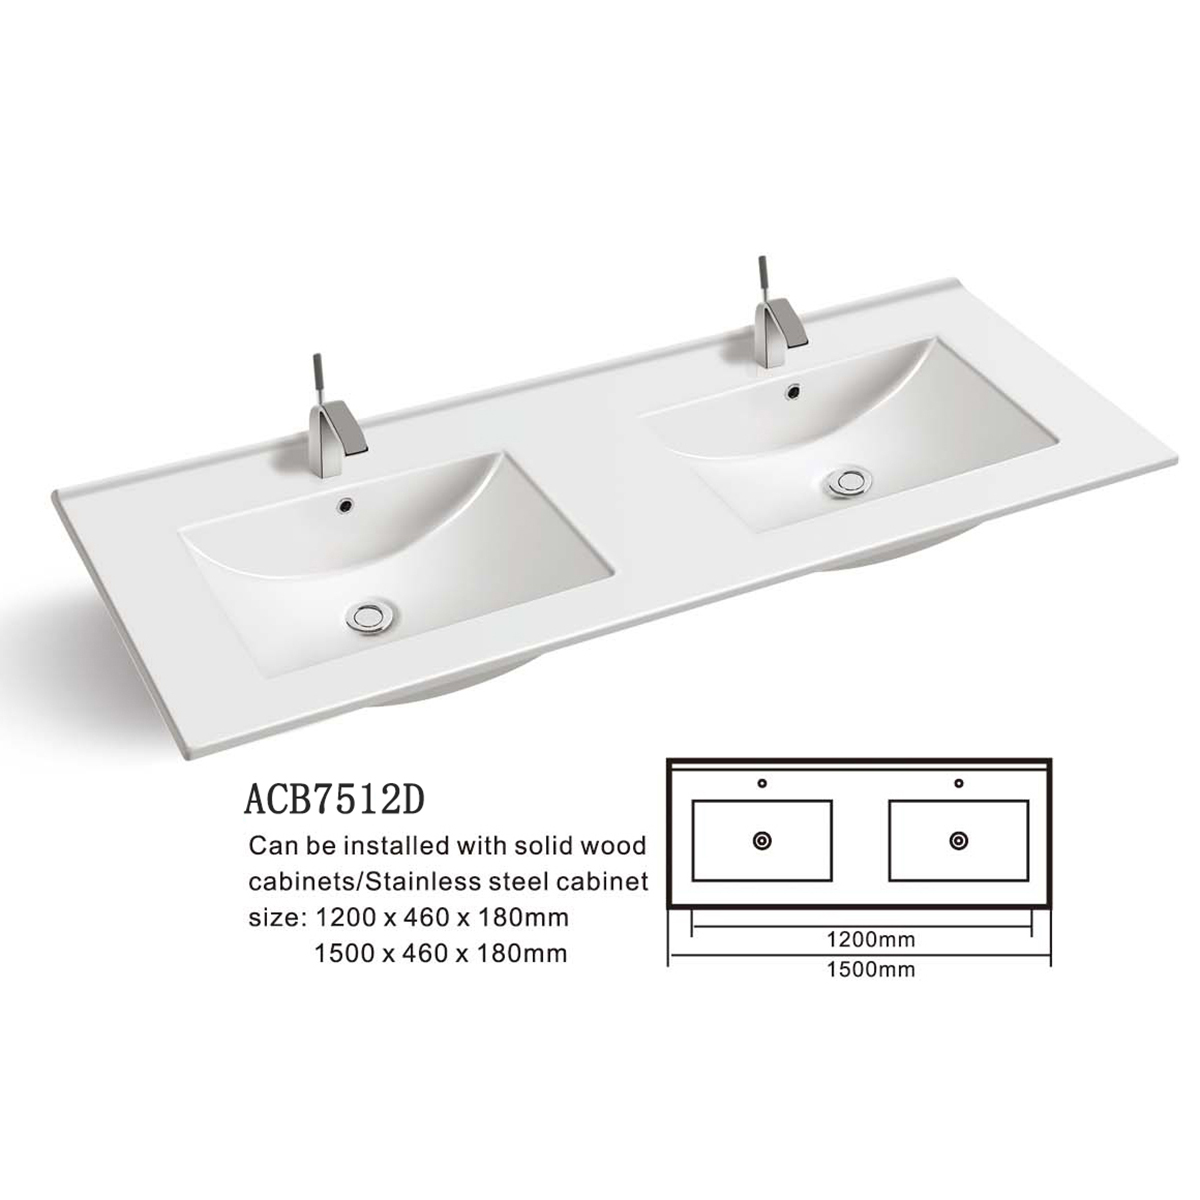 Aquacubic Drop-in Self-Rimming Double Bowl Square Bathroom ceramic Countertop Sink